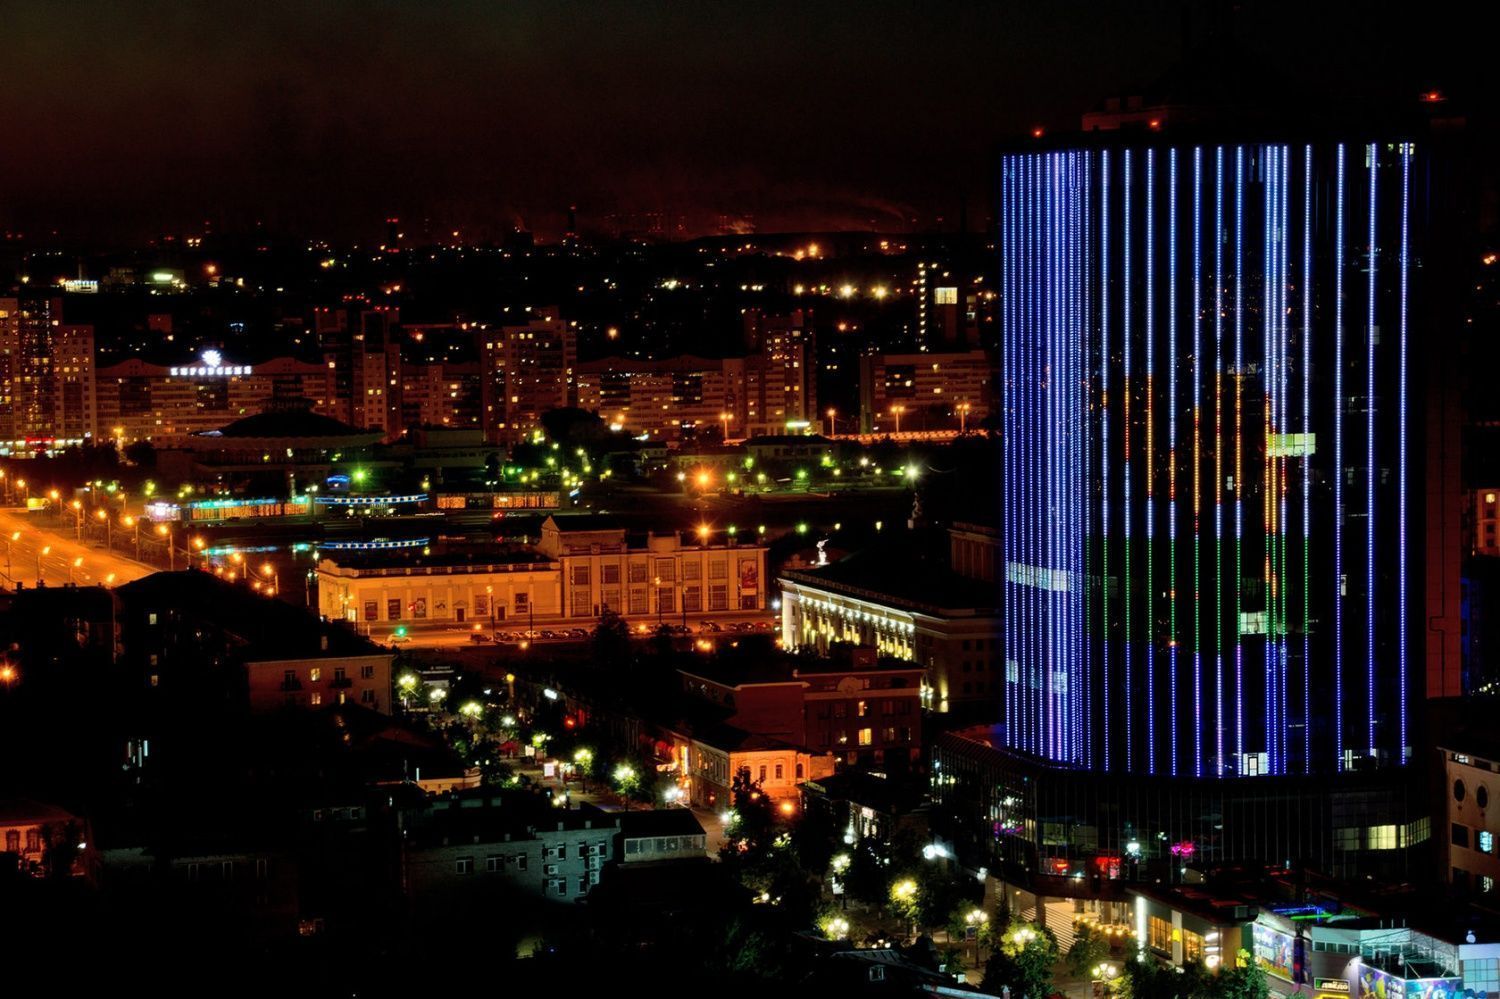 Facade lighting of the "Chelyabinsk City" Business Center